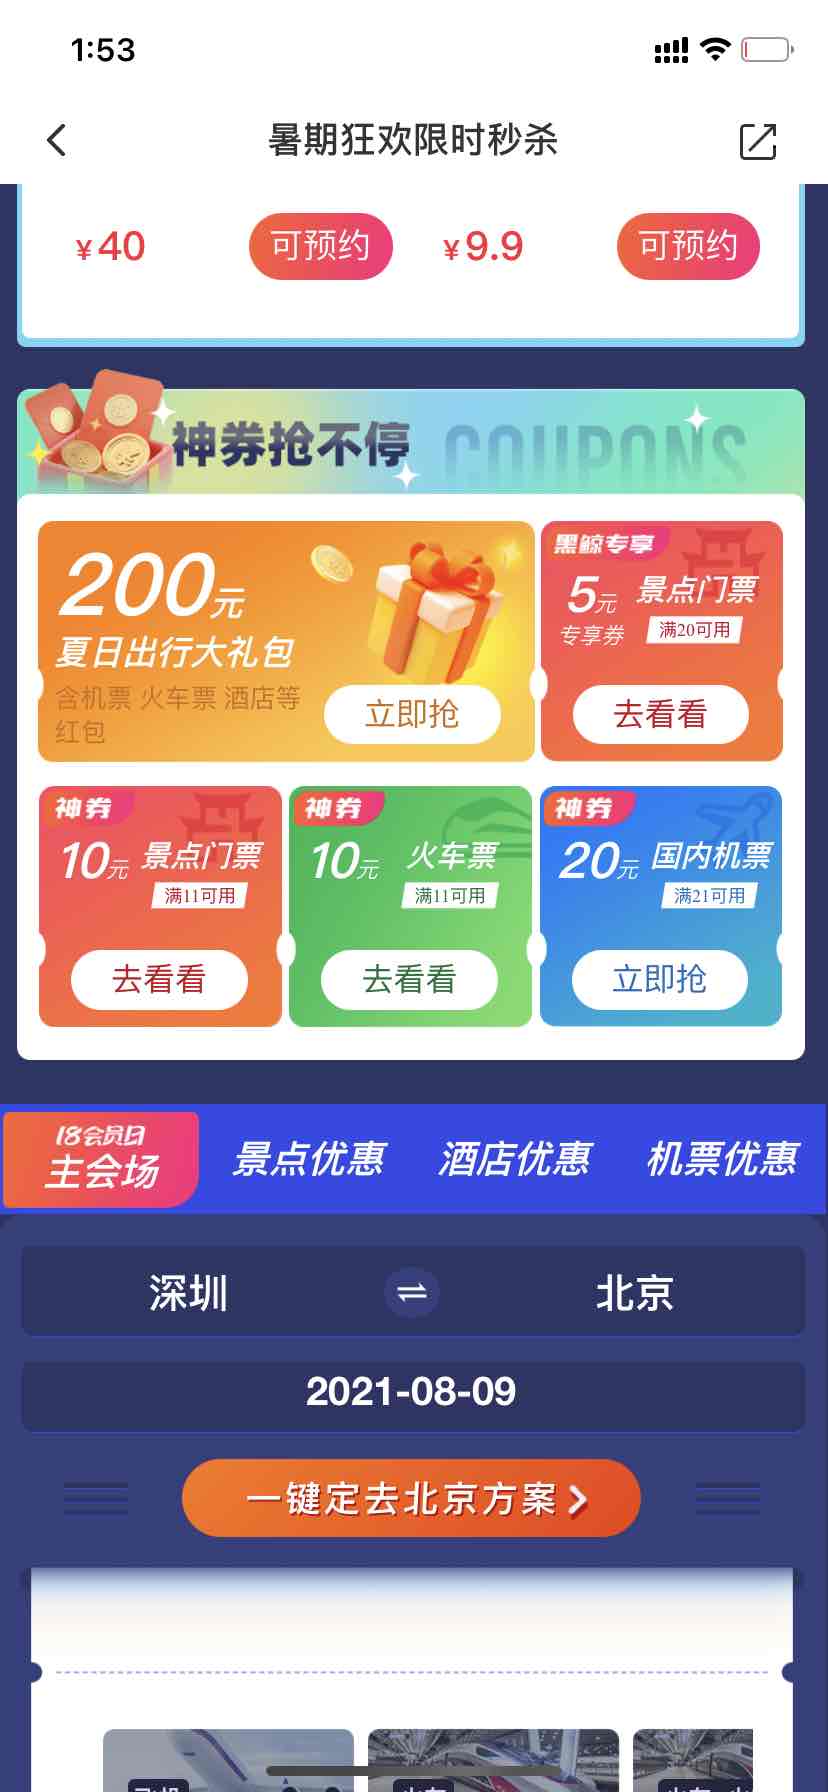 火车票 门票11-10 要去玩的有福啦-惠小助(52huixz.com)